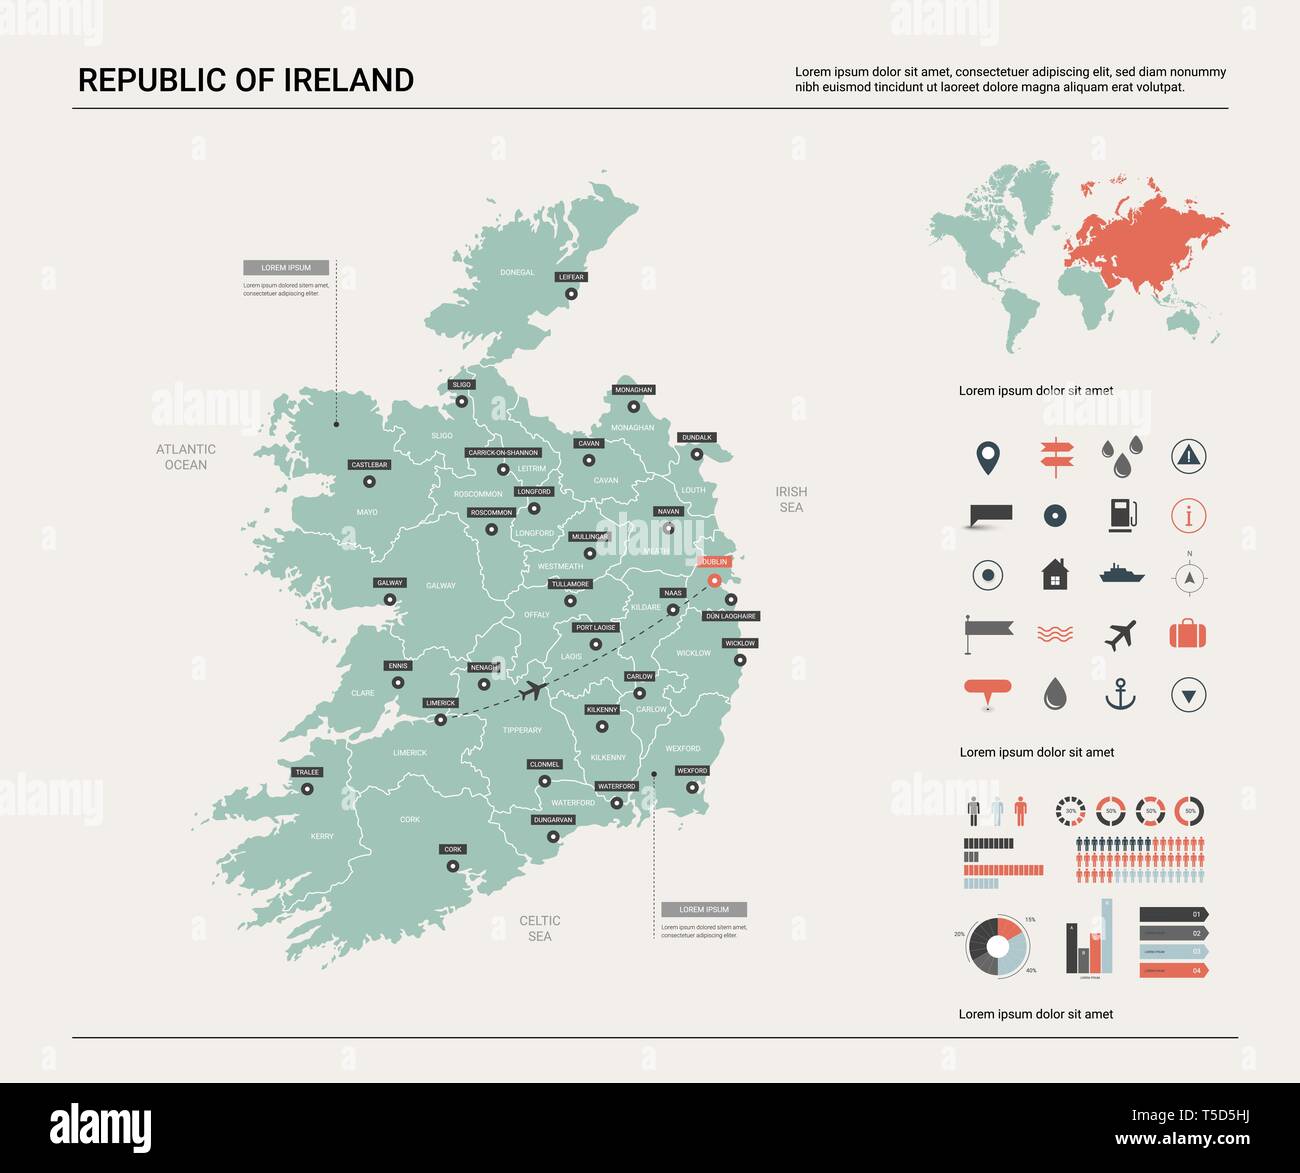 Mappa vettoriale della Repubblica di Irlanda. Alta dettagliata mappa del paese con la divisione, la città e la capitale Dublino. Mappa politico, mappa del mondo, elementi infografico Illustrazione Vettoriale